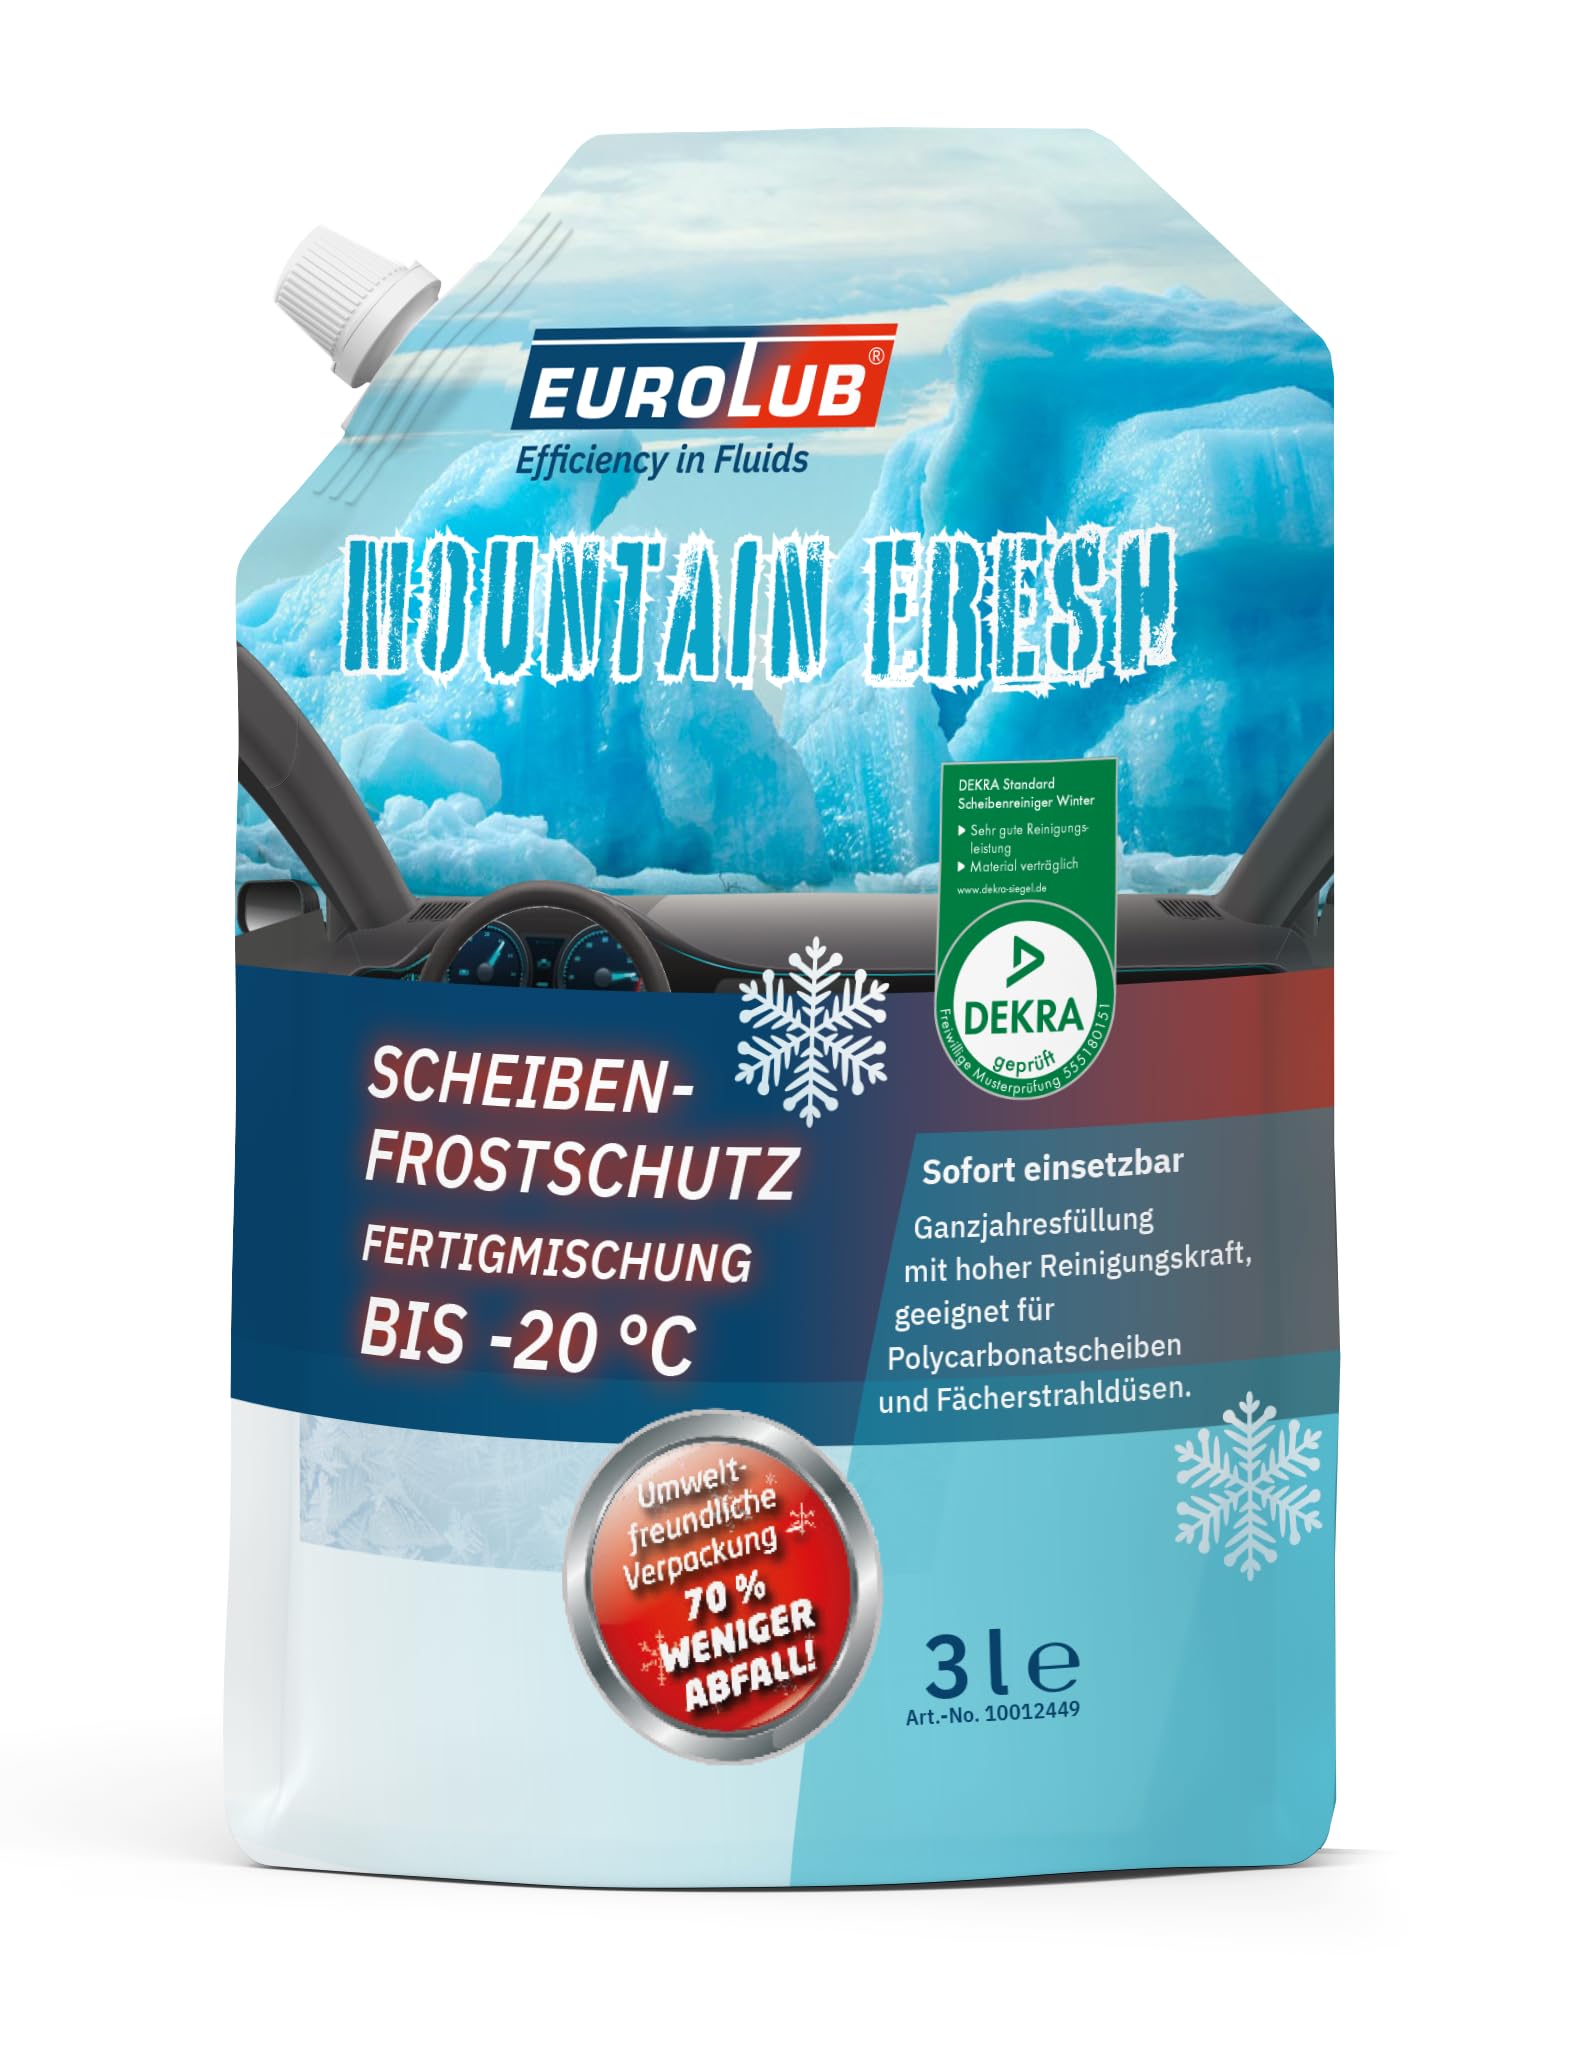 EUROLUB Scheibenfrostschutz Mountain Fresh Winter -20°C Fertigmischung, 3 Liter von EUROLUB